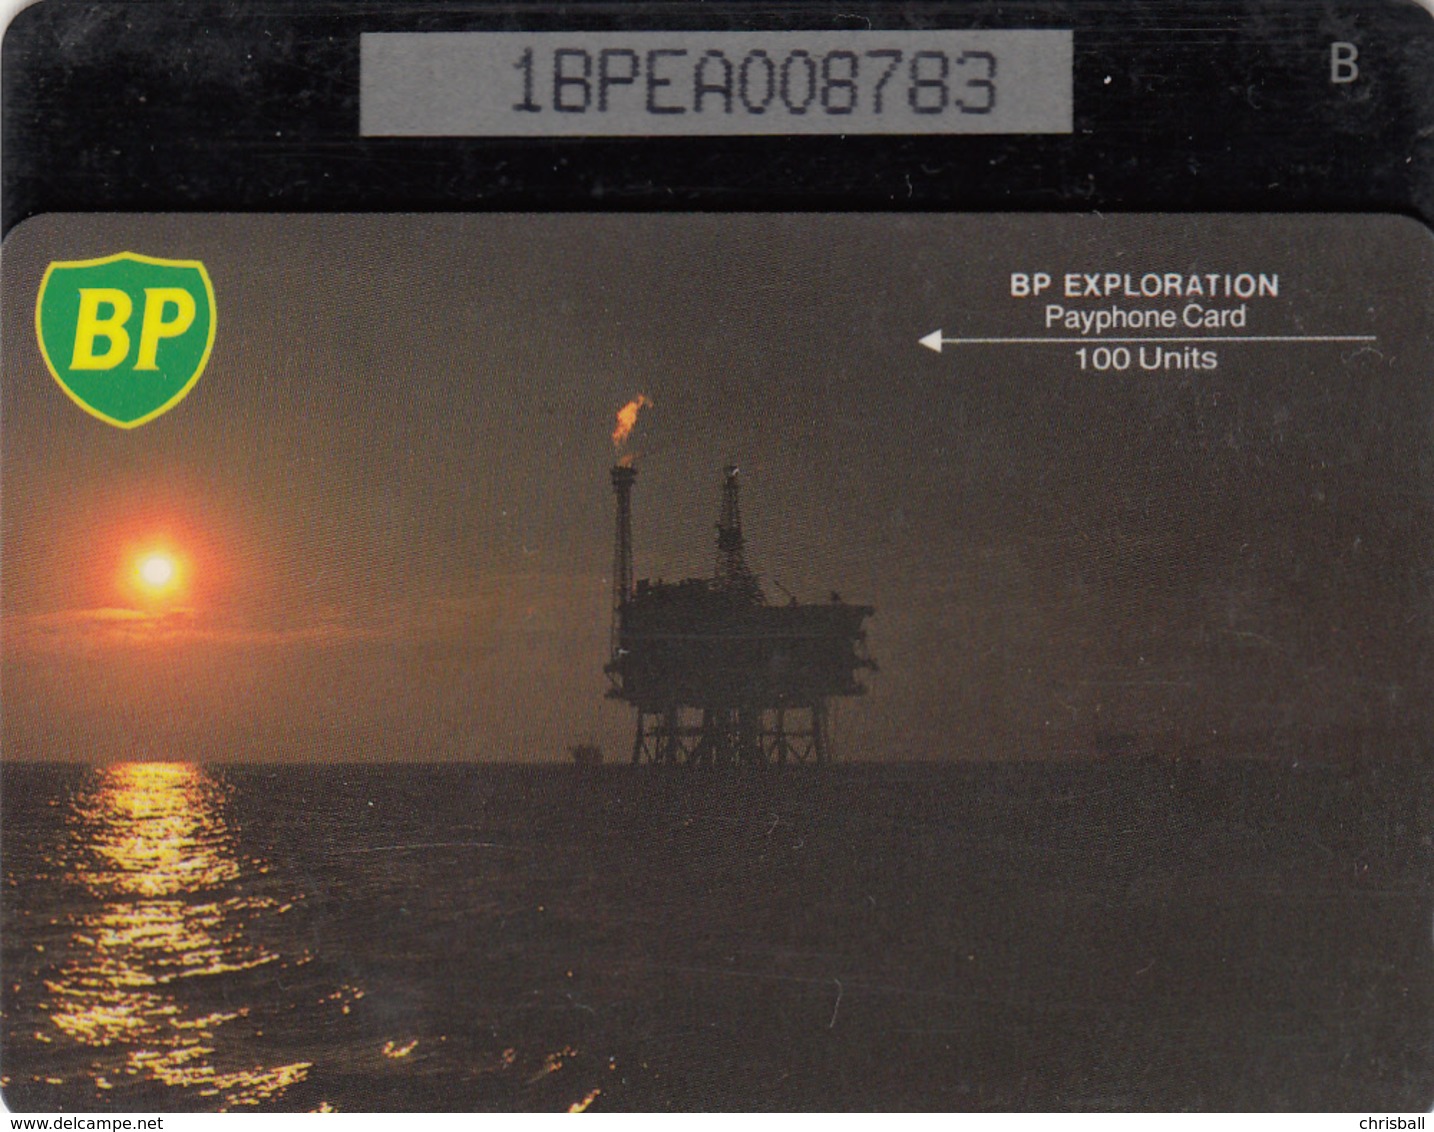 BT Oil Rig Phonecard - British Petroleum 100unit (1BPEA) - Superb Fine Used Condition - [ 2] Oil Drilling Rig